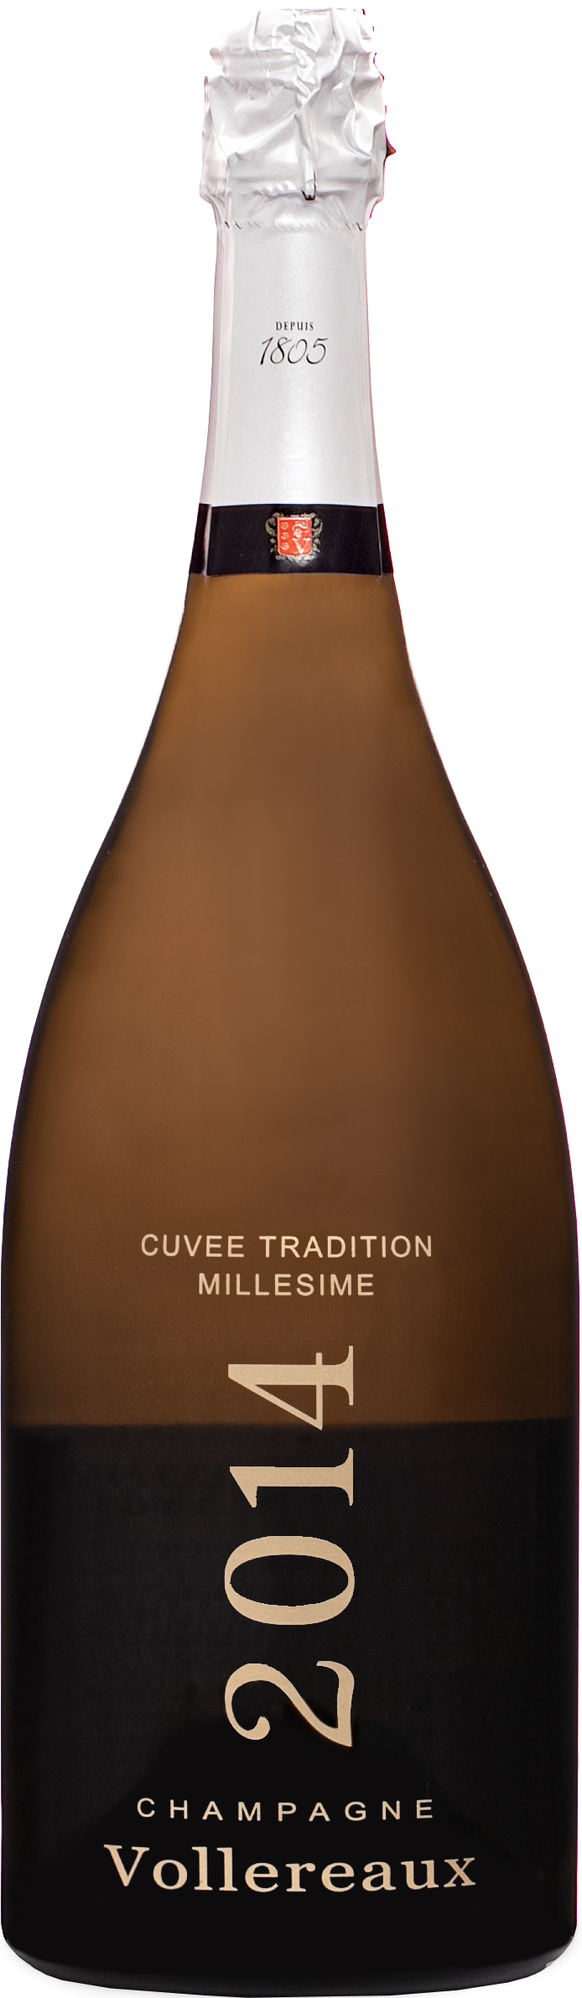 Vollereaux Cuvée Tradition Millésime 2014 12% 1,5l